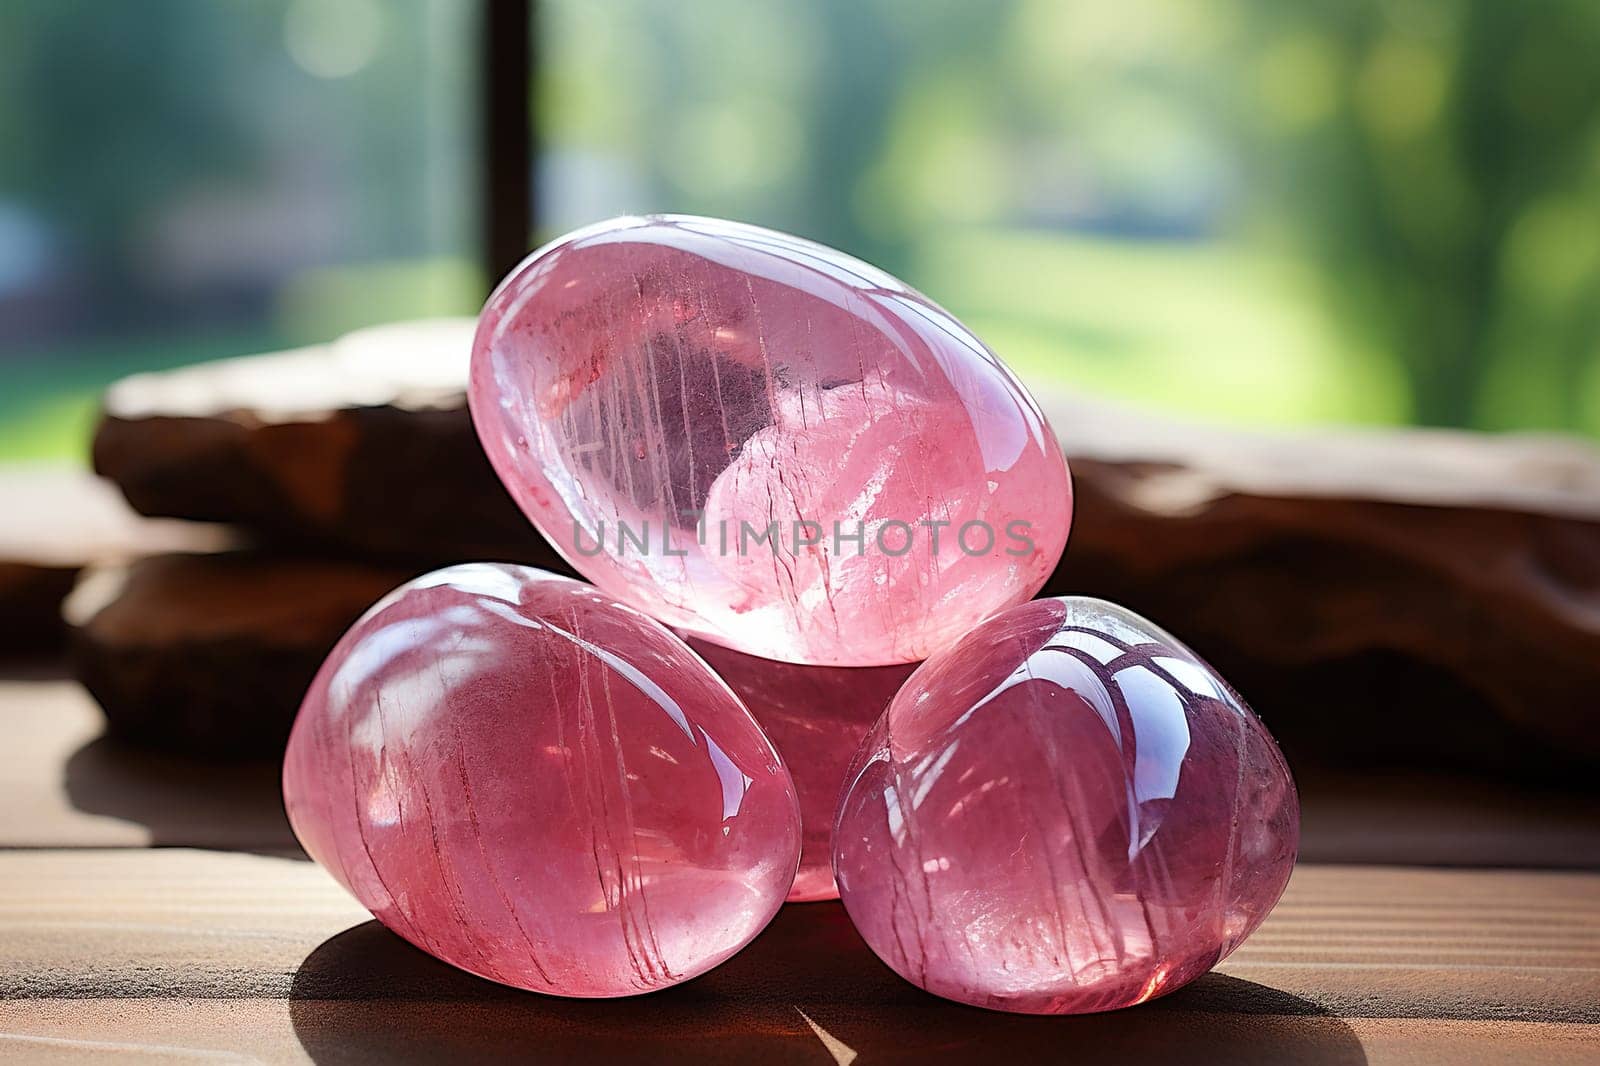 Three beautiful smooth rose quartz stones.